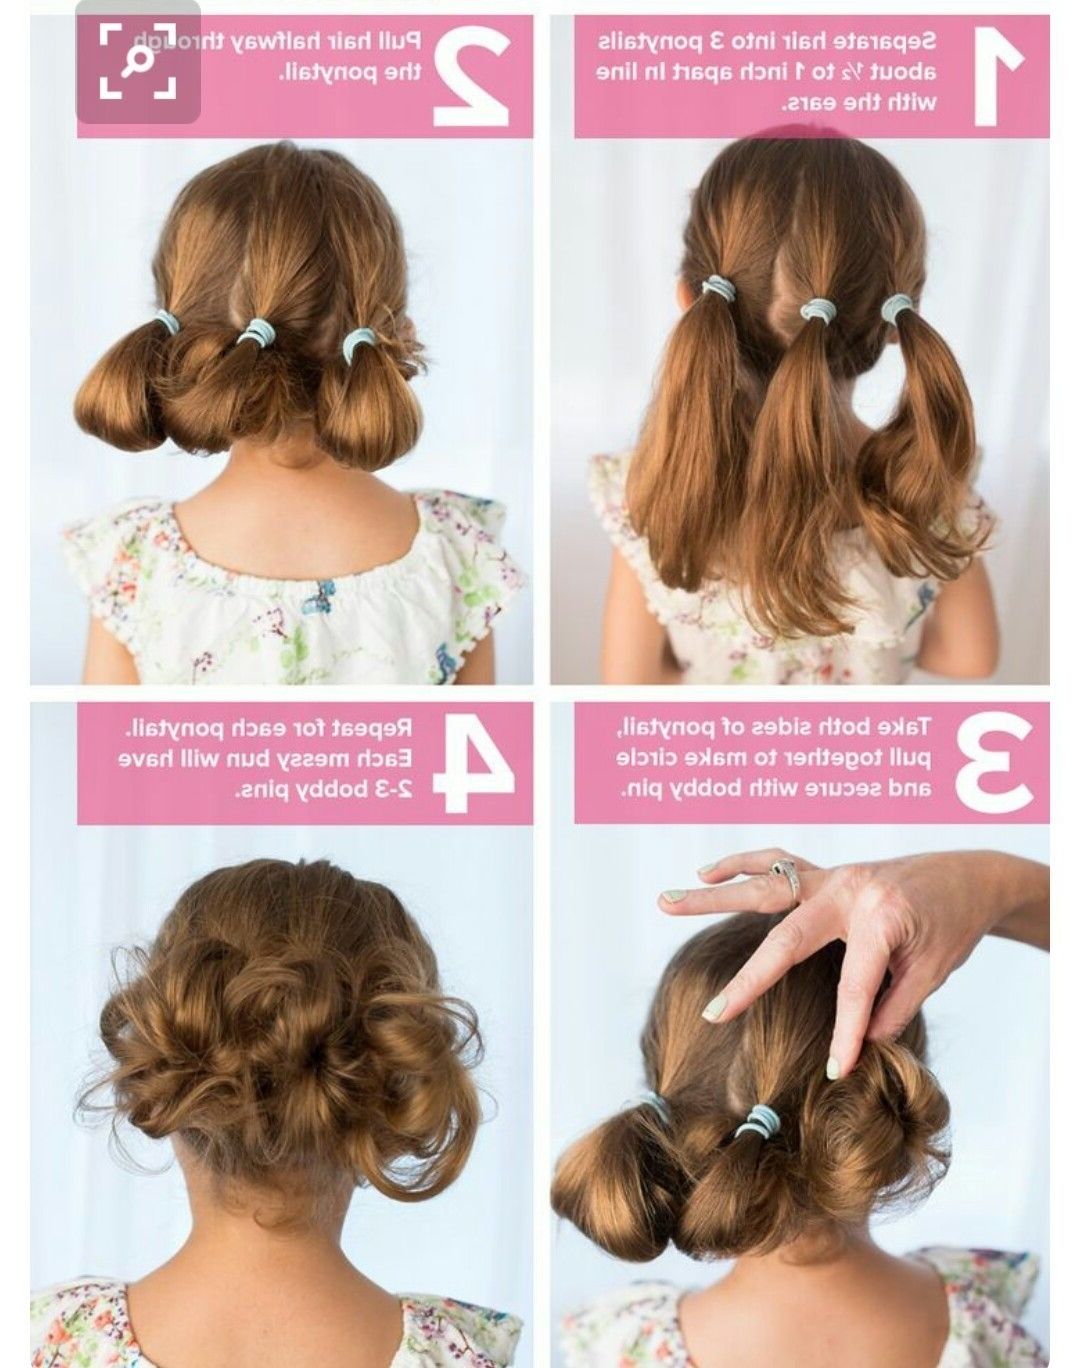 Strange Little Buns | Strange Flowers | Pinterest | Hair Style, Girl Throughout Little Girl Updos For Short Hair (View 1 of 15)